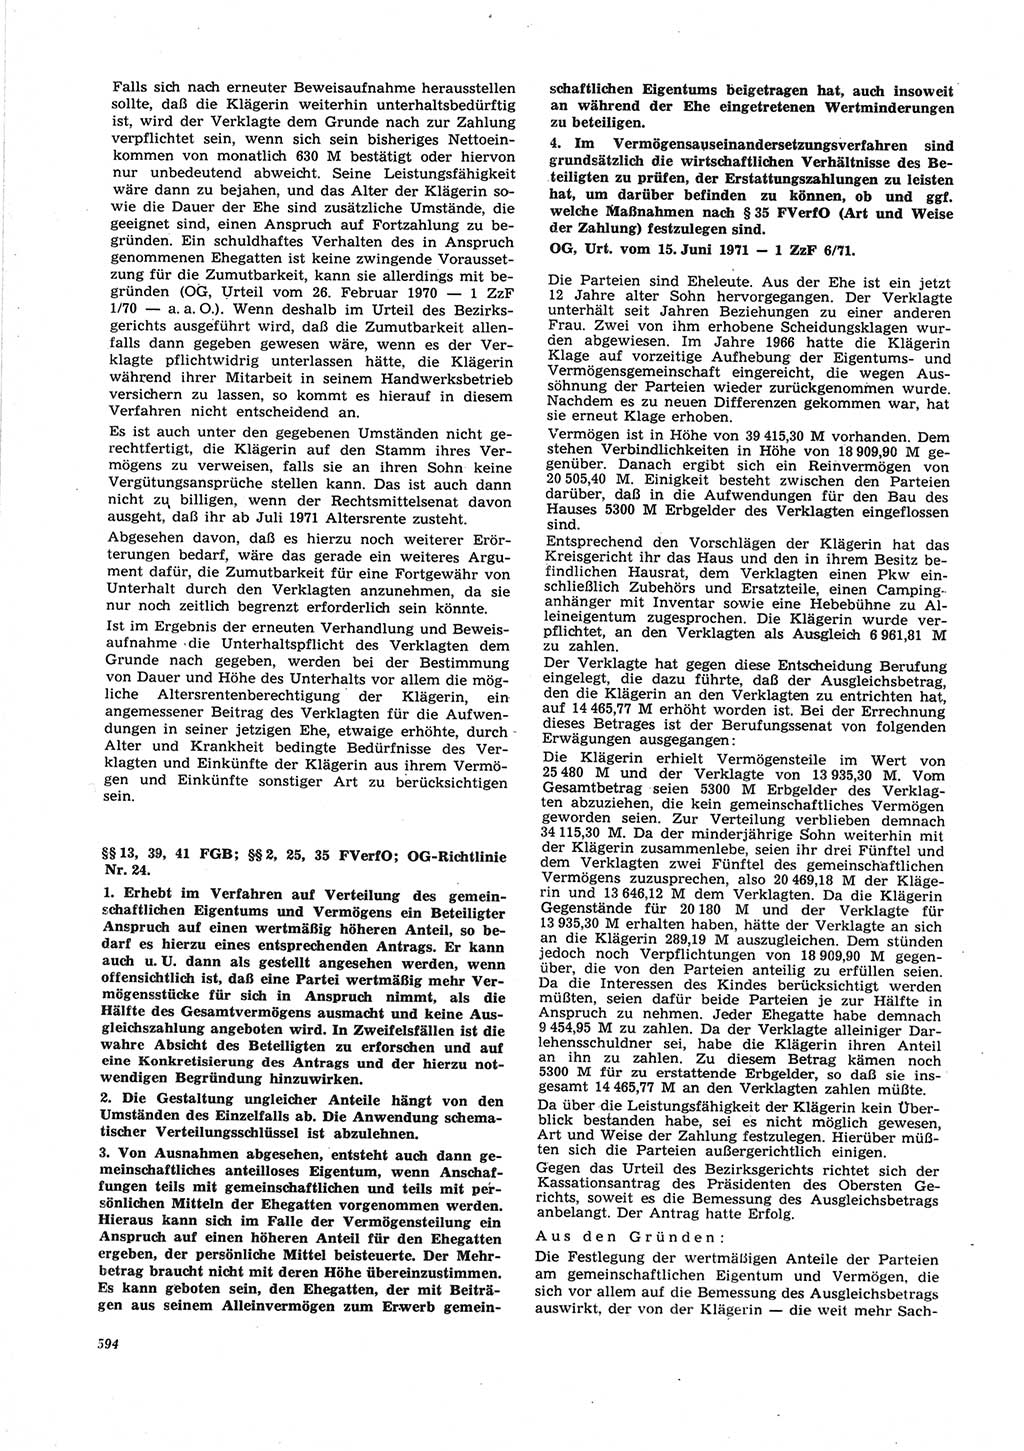 Neue Justiz (NJ), Zeitschrift für Recht und Rechtswissenschaft [Deutsche Demokratische Republik (DDR)], 25. Jahrgang 1971, Seite 594 (NJ DDR 1971, S. 594)